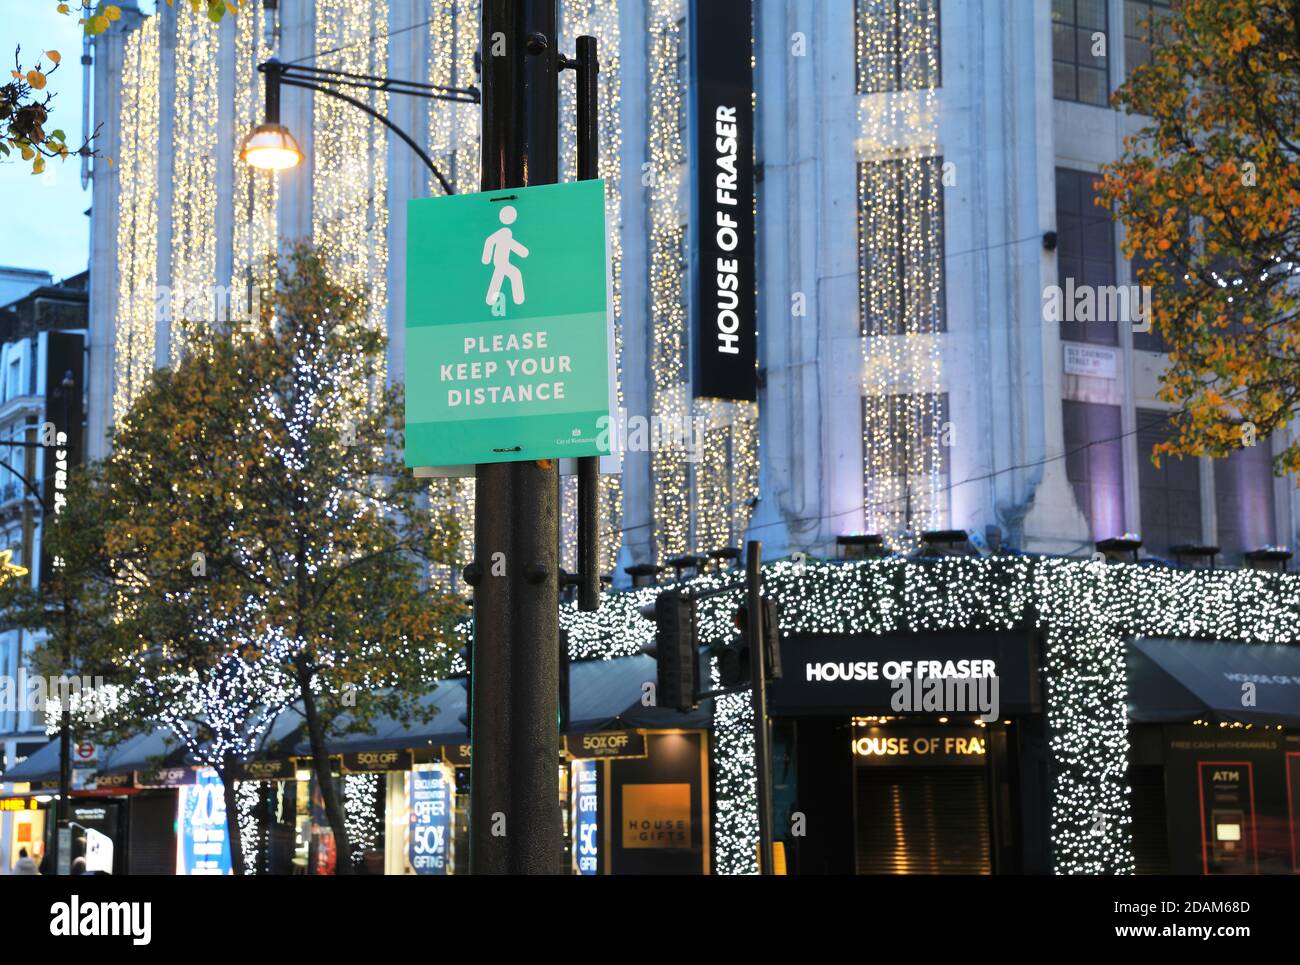 Des signes sociaux de distanciation et des magasins fermés sur Oxford Street à la veille de Noël, dans le deuxième confinement national en Angleterre, au Royaume-Uni Banque D'Images